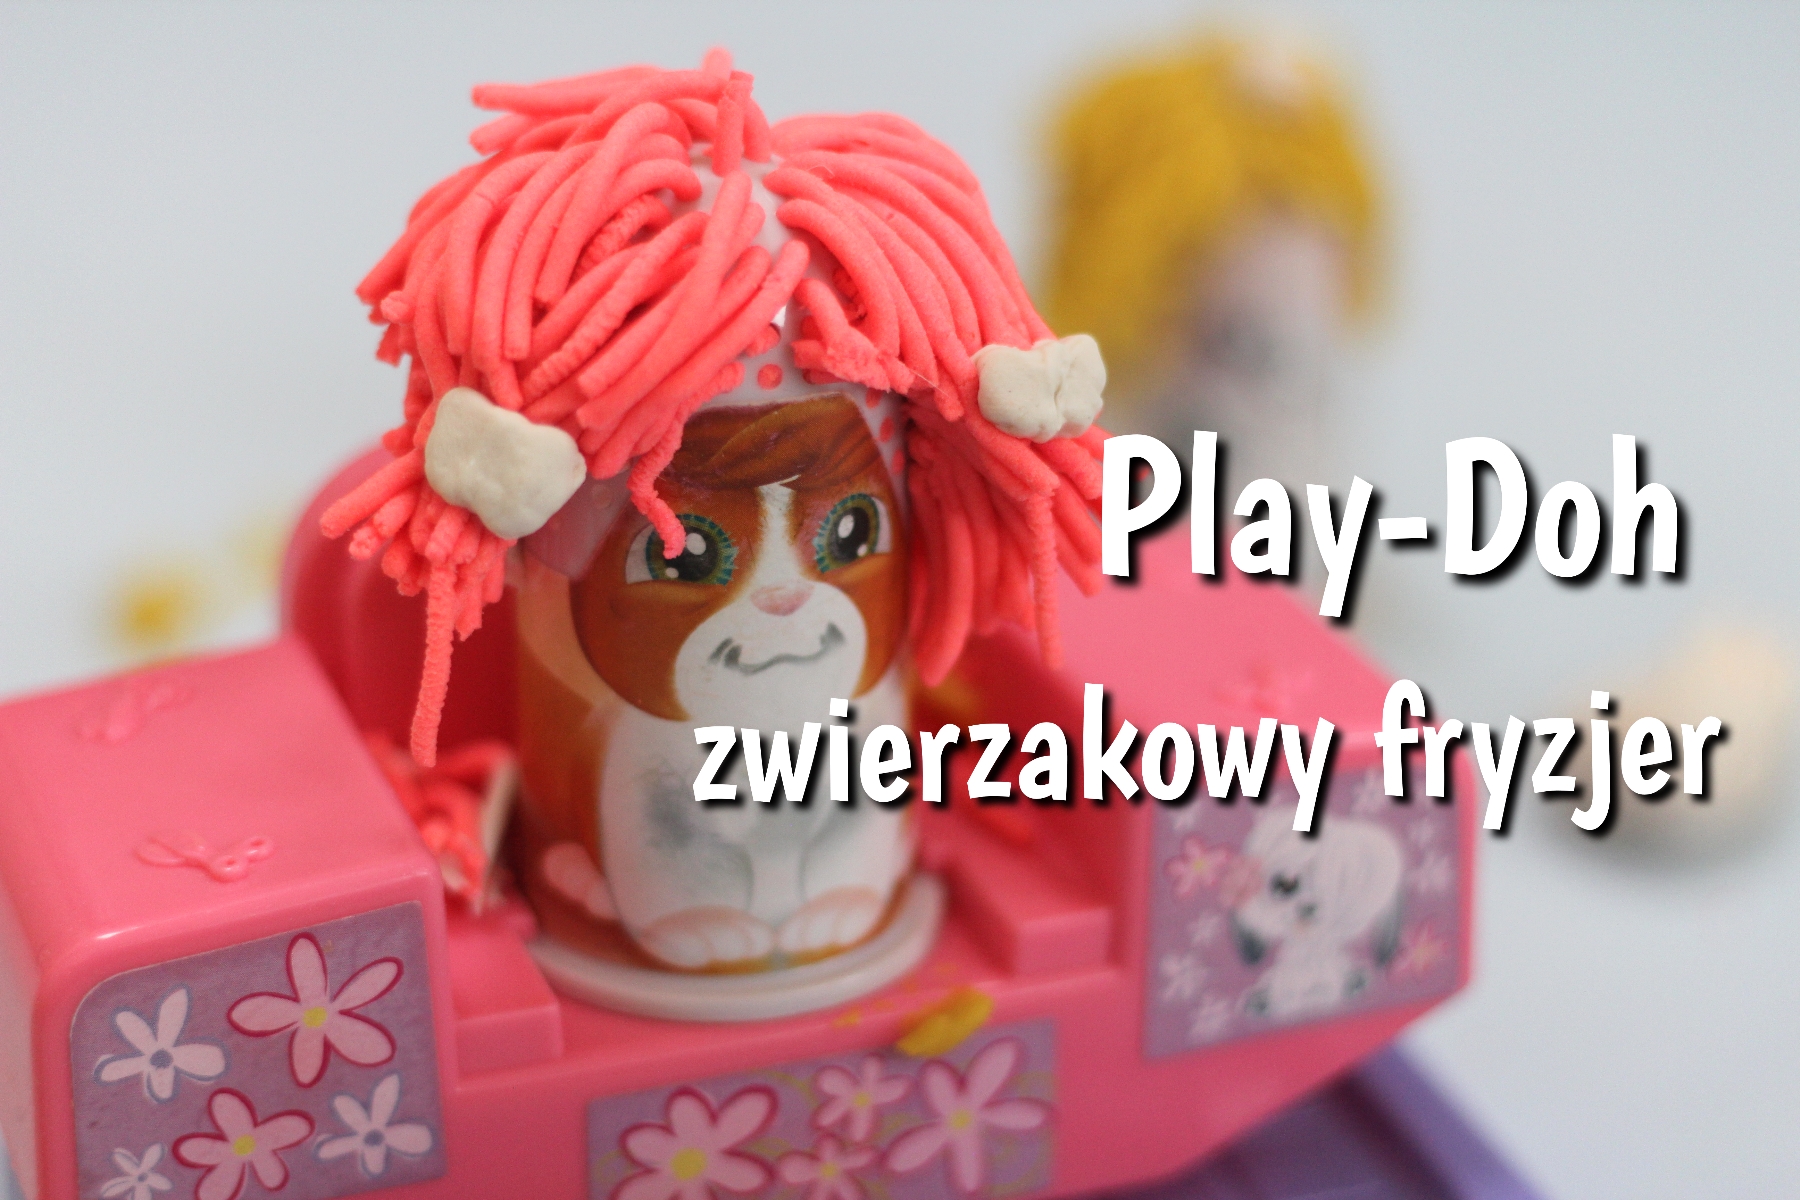 Play-Doh zwierzakowy fryzjer